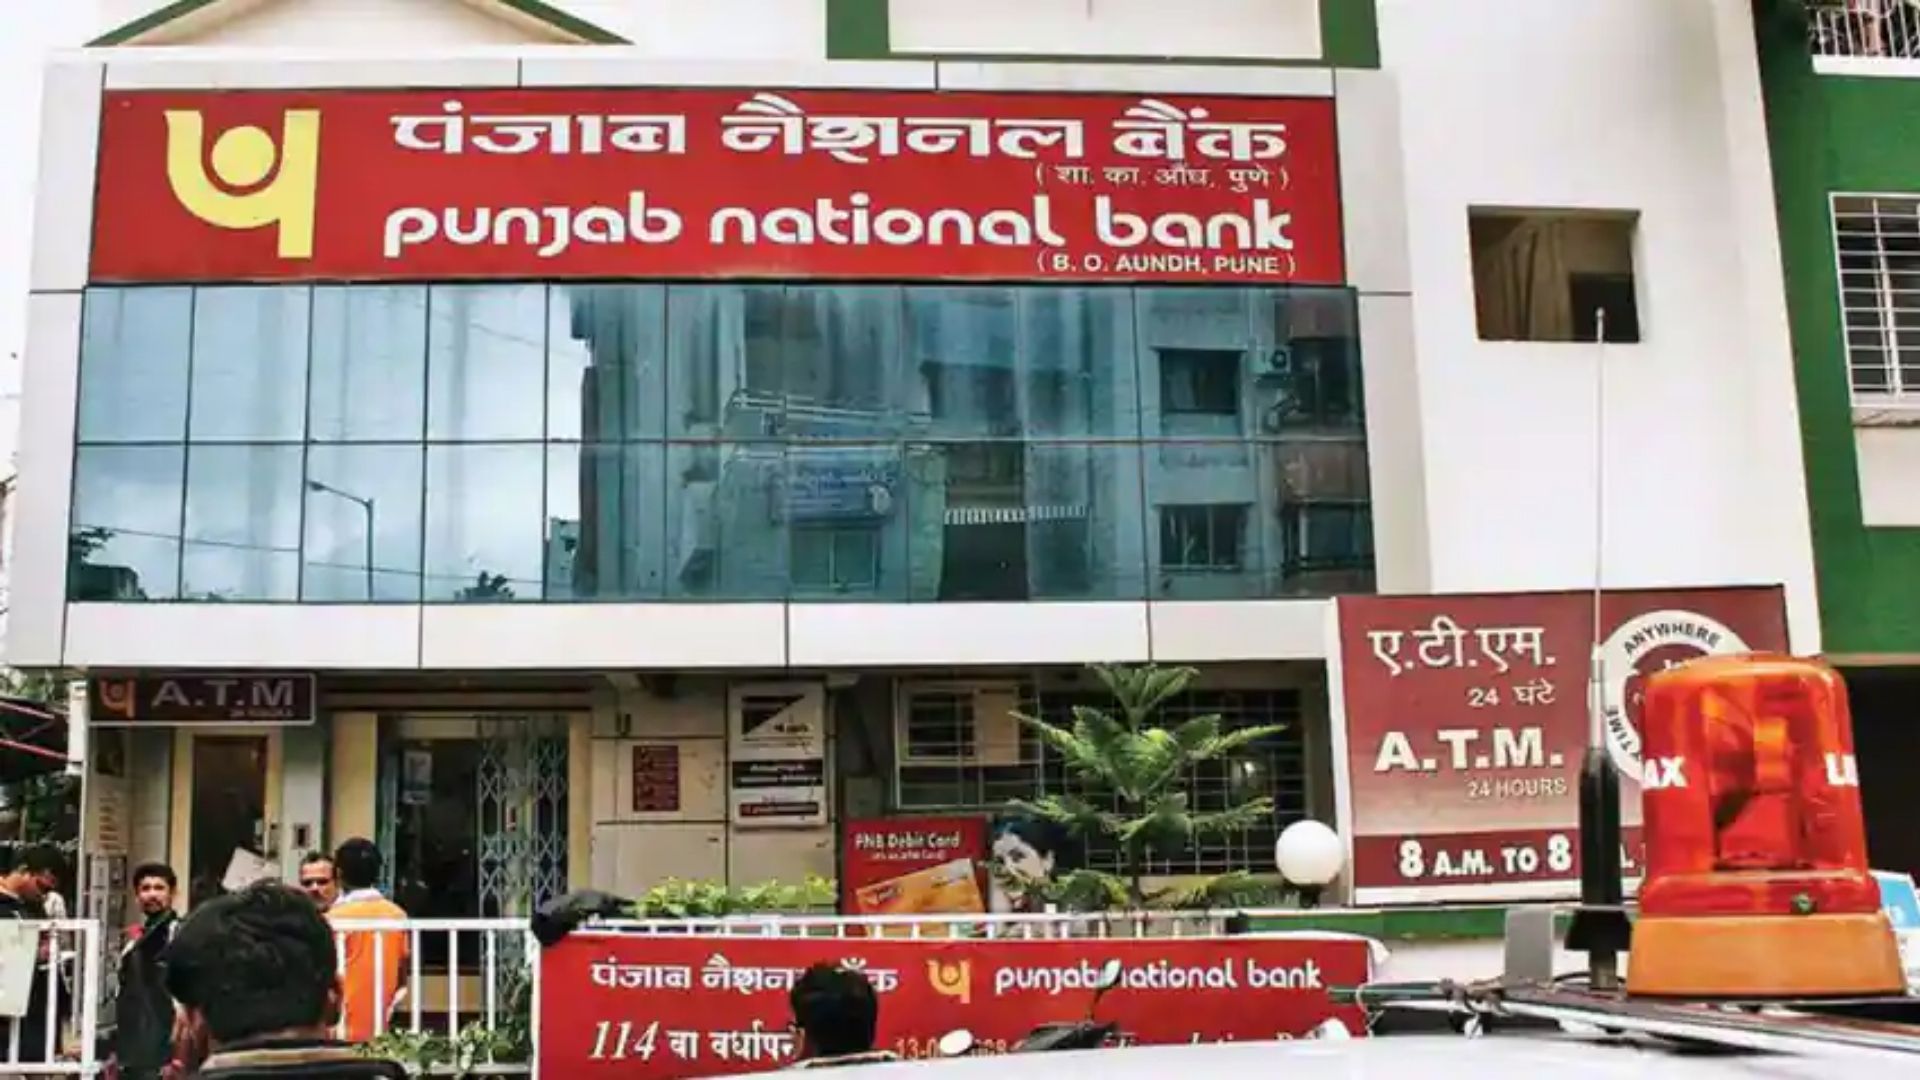 pnb bank offer